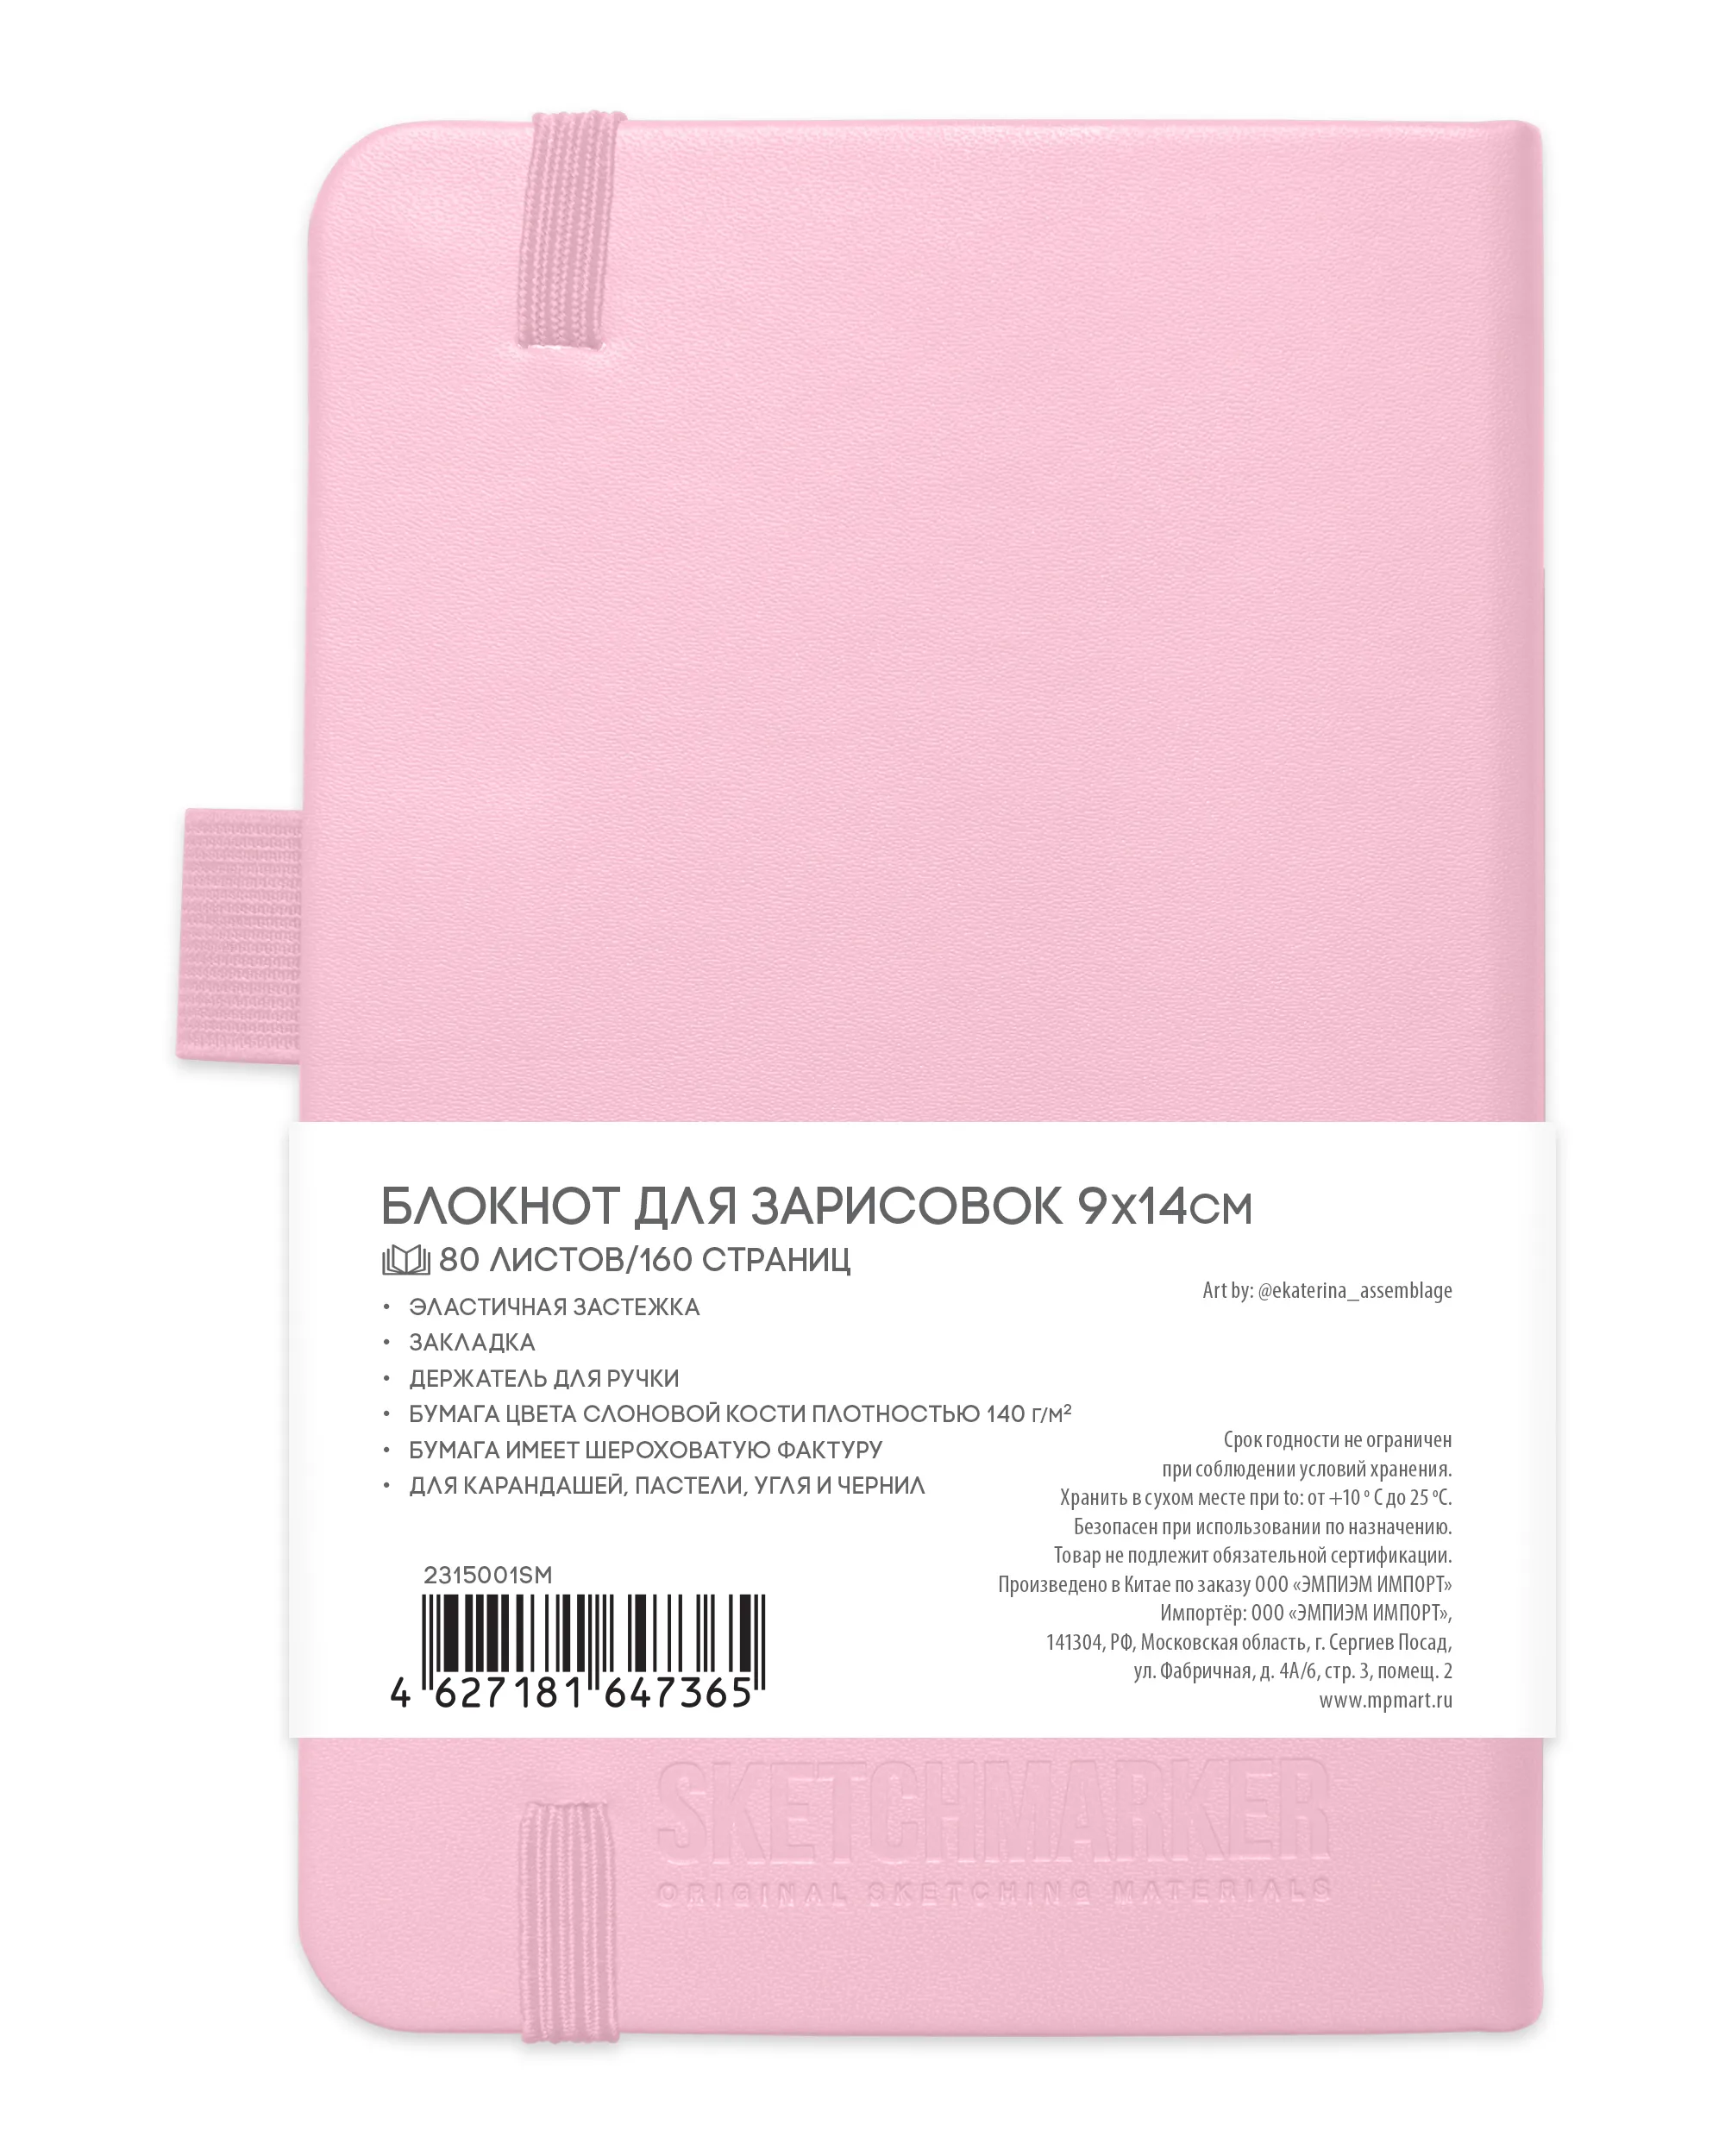 Блокнот для зарисовок Sketchmarker 140г/кв.м 9*14см 80л (Розовый)